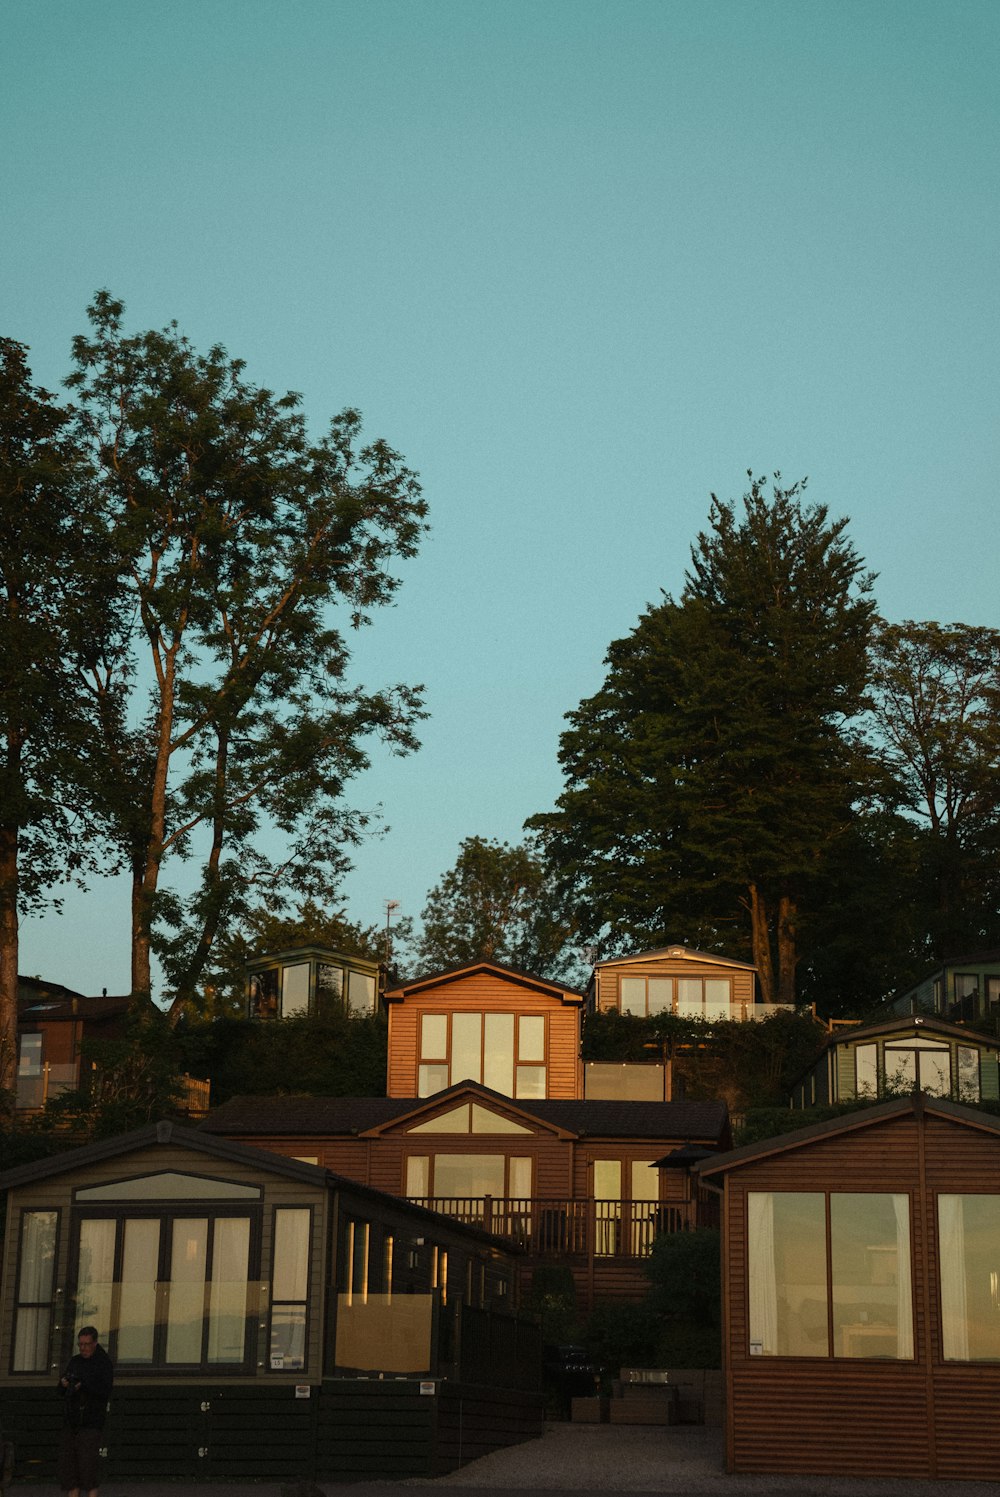 Un couple de maisons assis au sommet d’une colline